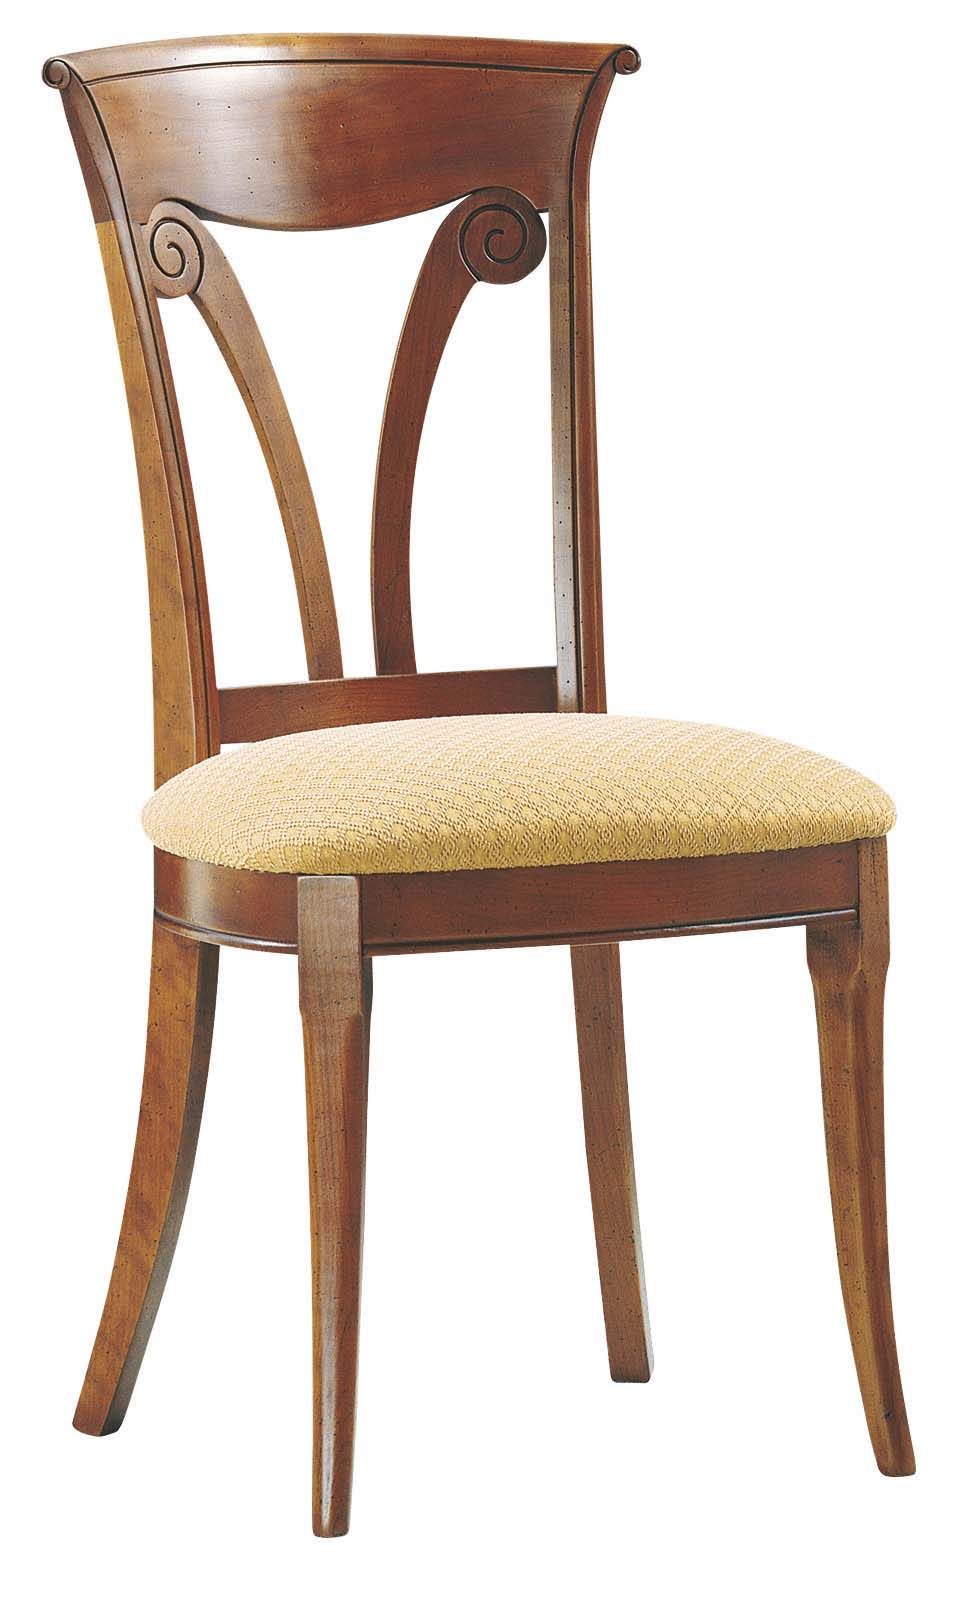 分享法国品牌Collinet 的几把椅子_634 N.jpg